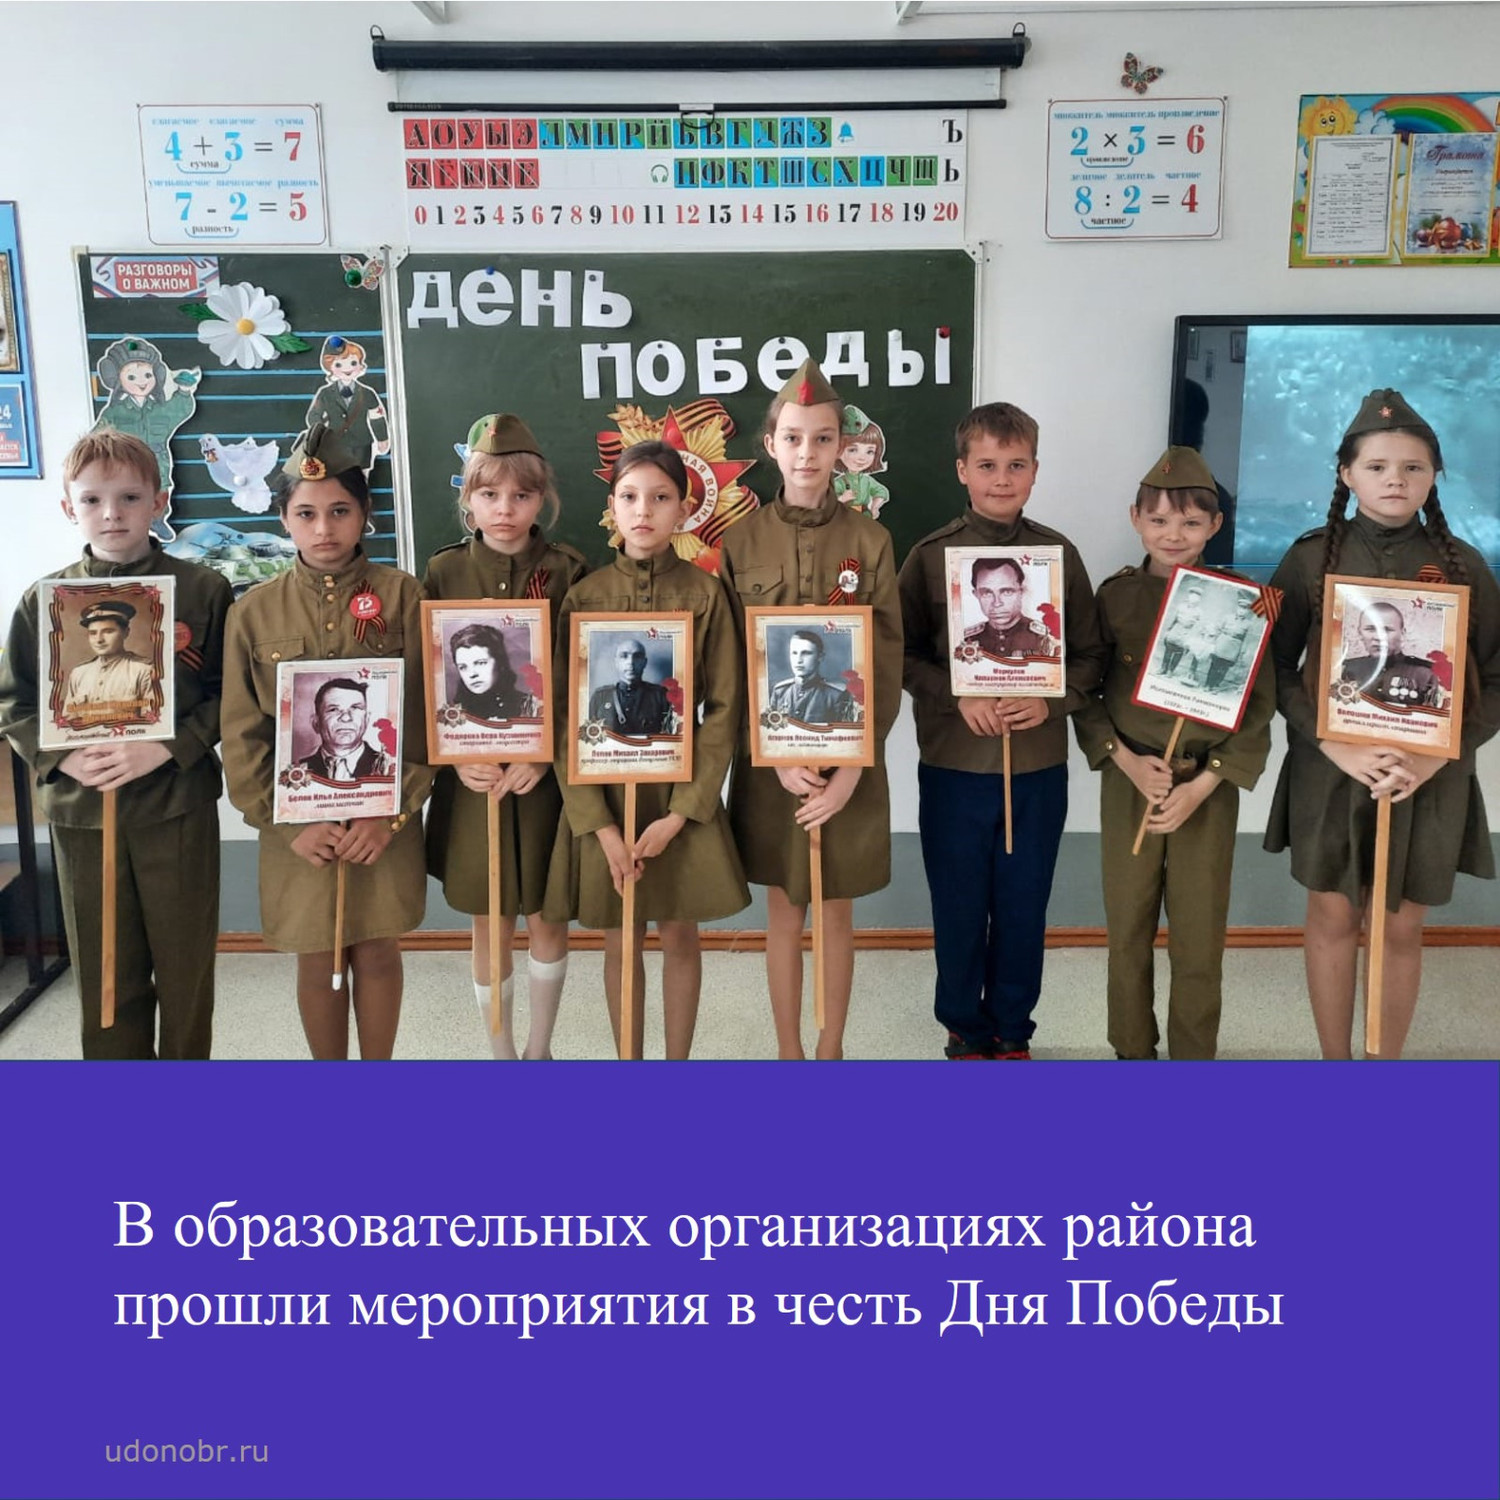 В образовательных организациях района прошли мероприятия в честь Дня Победы